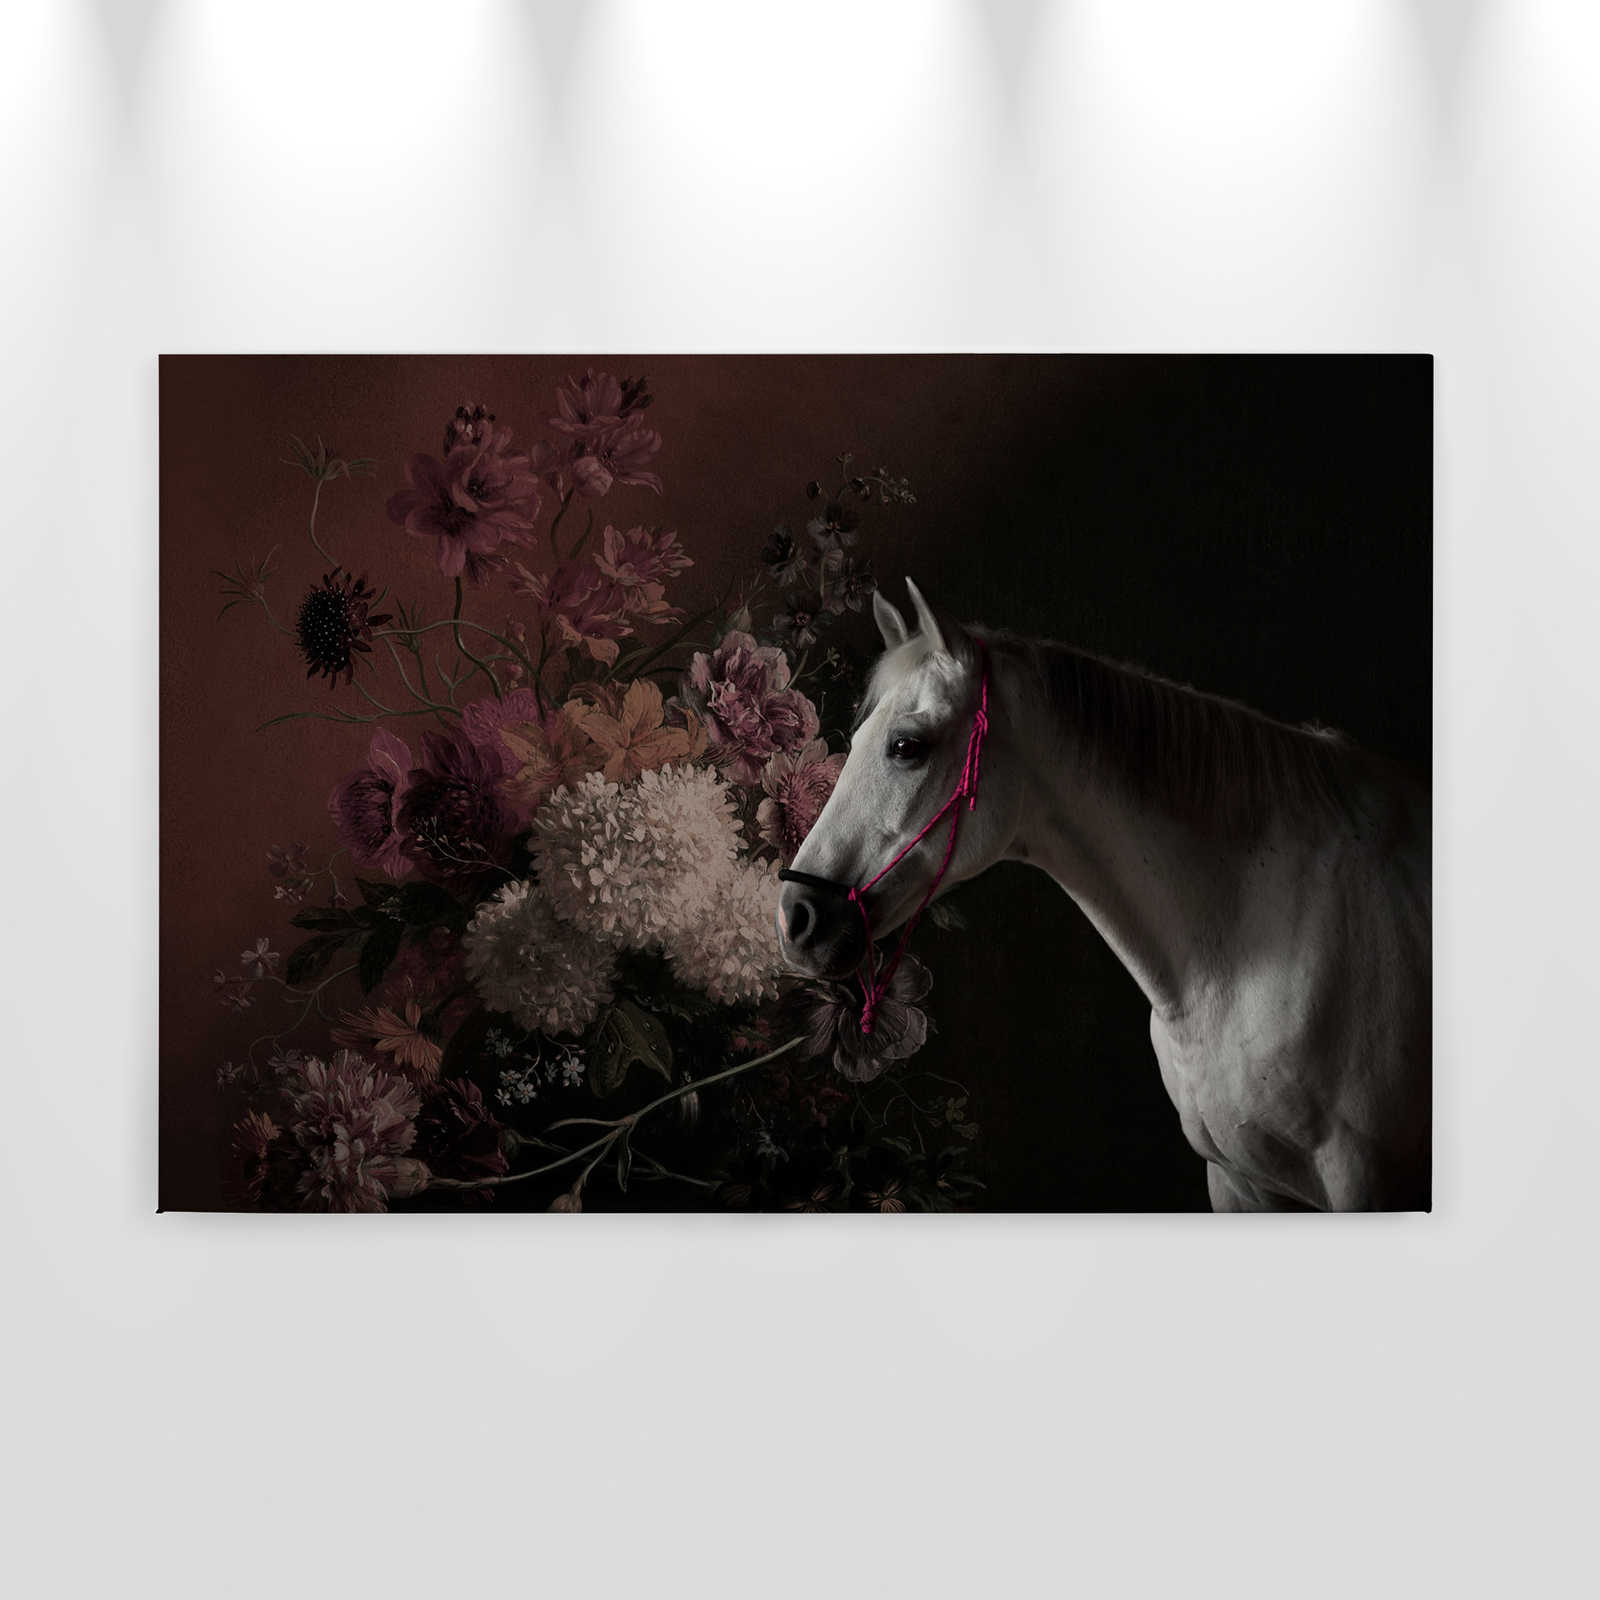             Toile Portrait de cheval avec fleurs - 0,90 m x 0,60 m
        